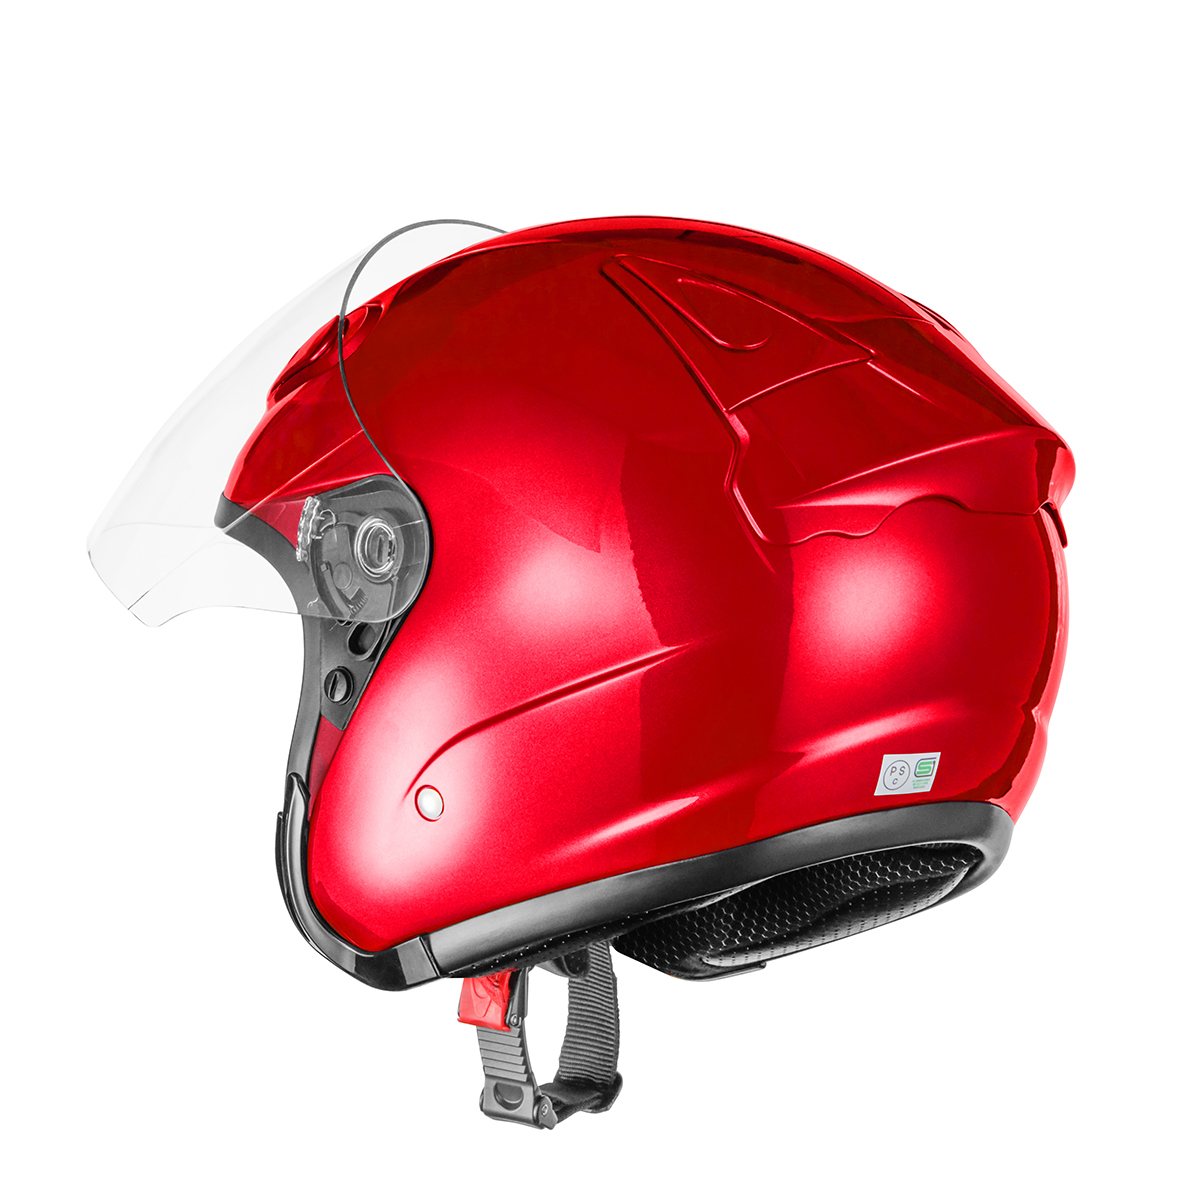 バイクヘルメット SG規格適合 PSCマーク付 Mサイズ エアロフォルムジェットヘルメット レッド バイク ヘルメット レディース ユニセックス_画像4